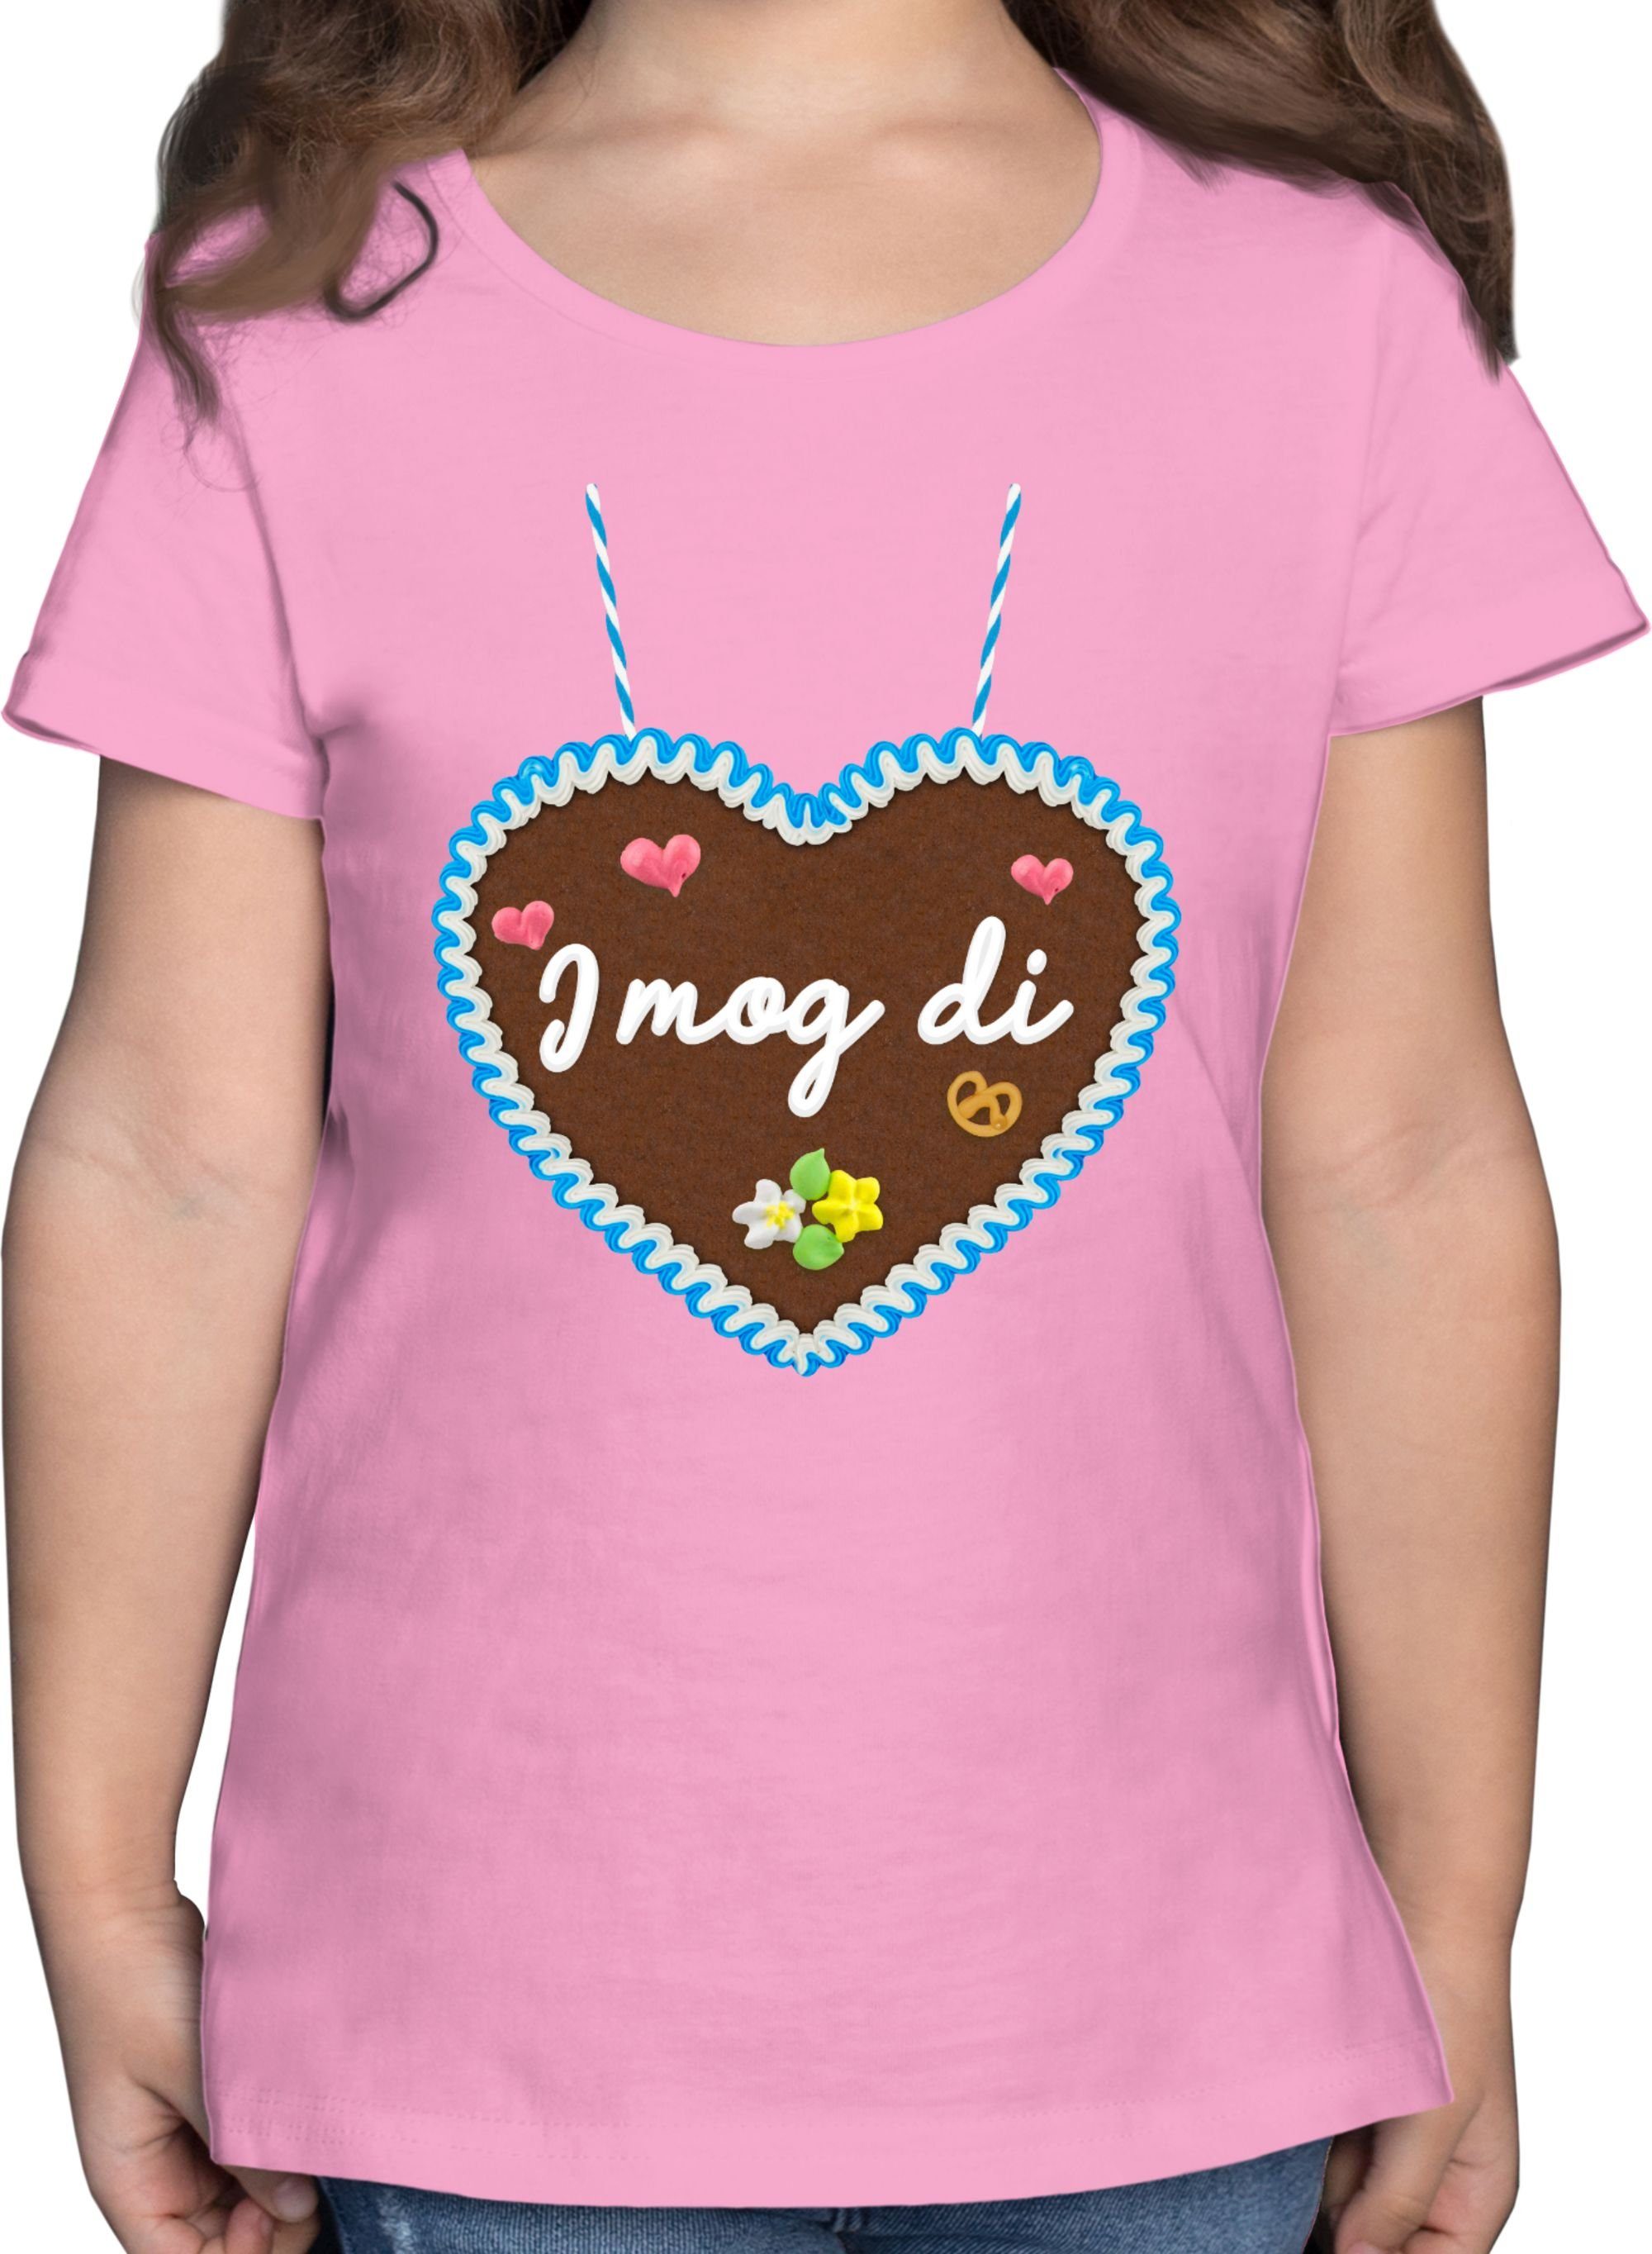 Shirtracer T-Shirt I mog di - Lebkuchenherz - Gänseblümchen Butterblume Herzen Mode für Oktoberfest Kinder Outfit 02 Rosa